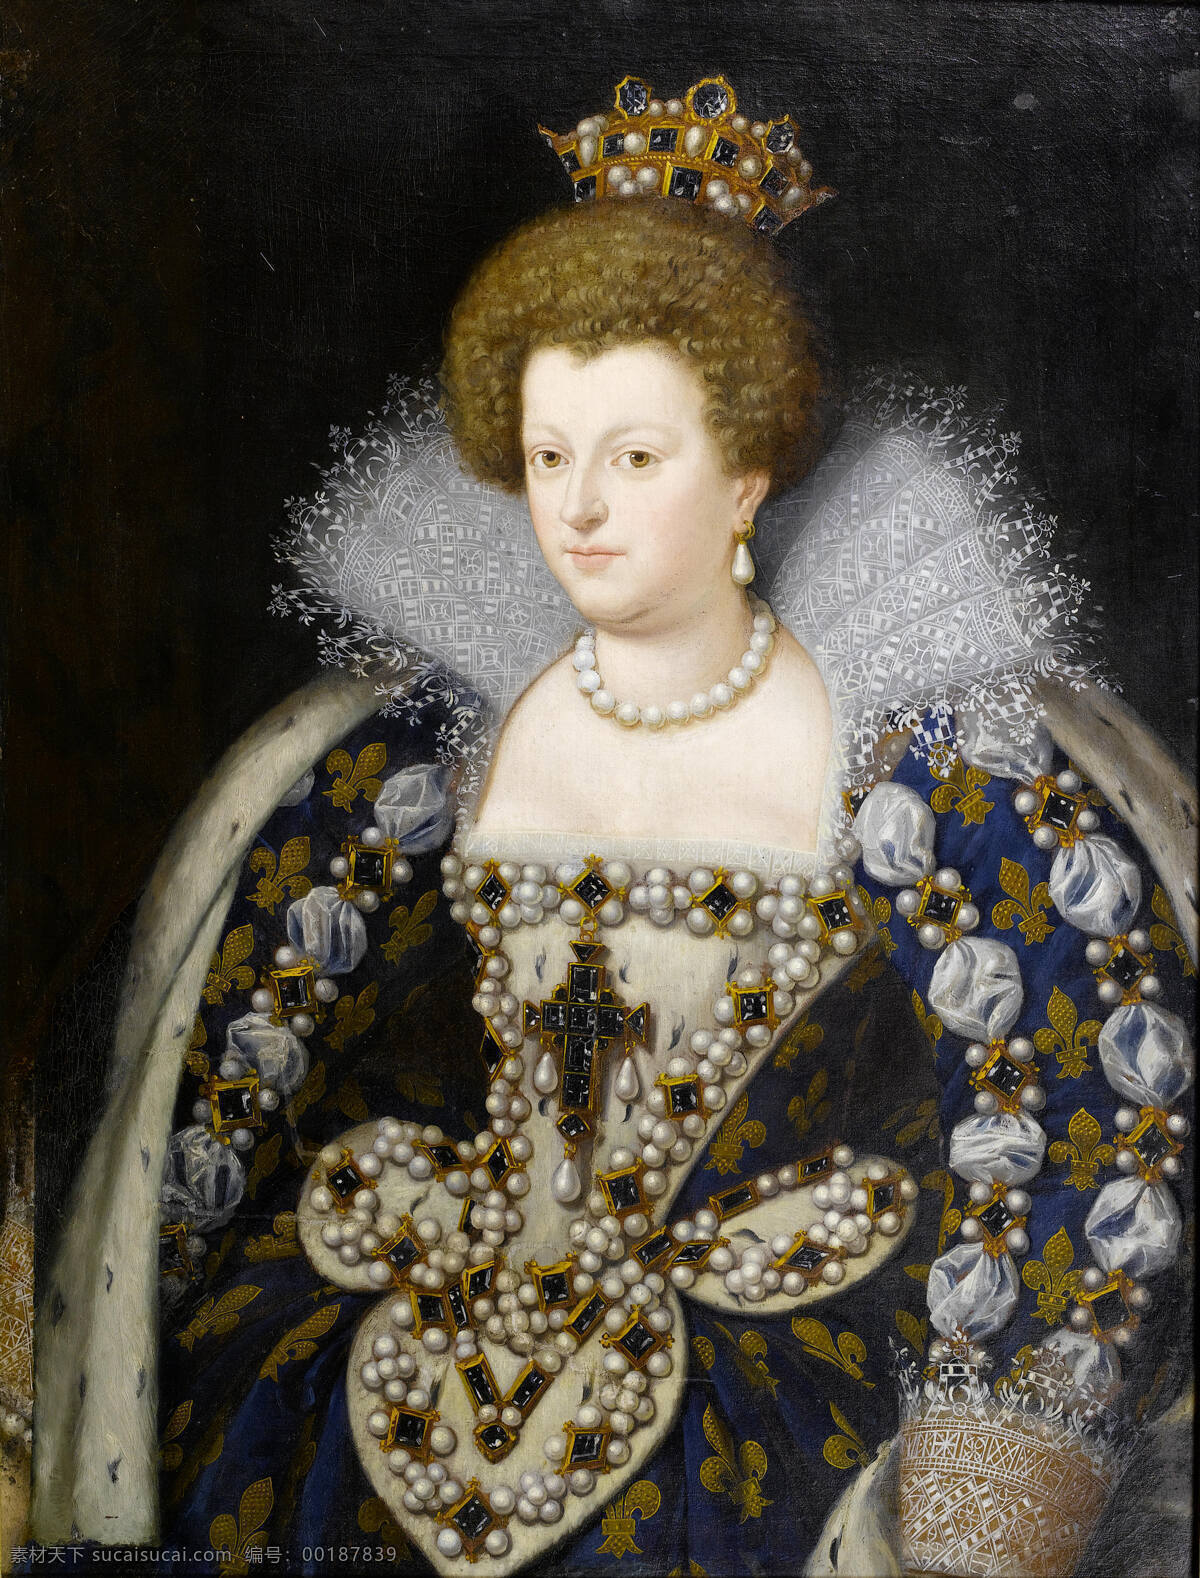 古典油画 绘画书法 文化艺术 意大利 油画 玛丽 德梅 弟 奇 设计素材 模板下载 玛丽德梅弟奇 法国王后 亨利 四世 二 妻子 路易十三之母 法国摄政王 佛罗伦萨 托斯卡纳 大公 女